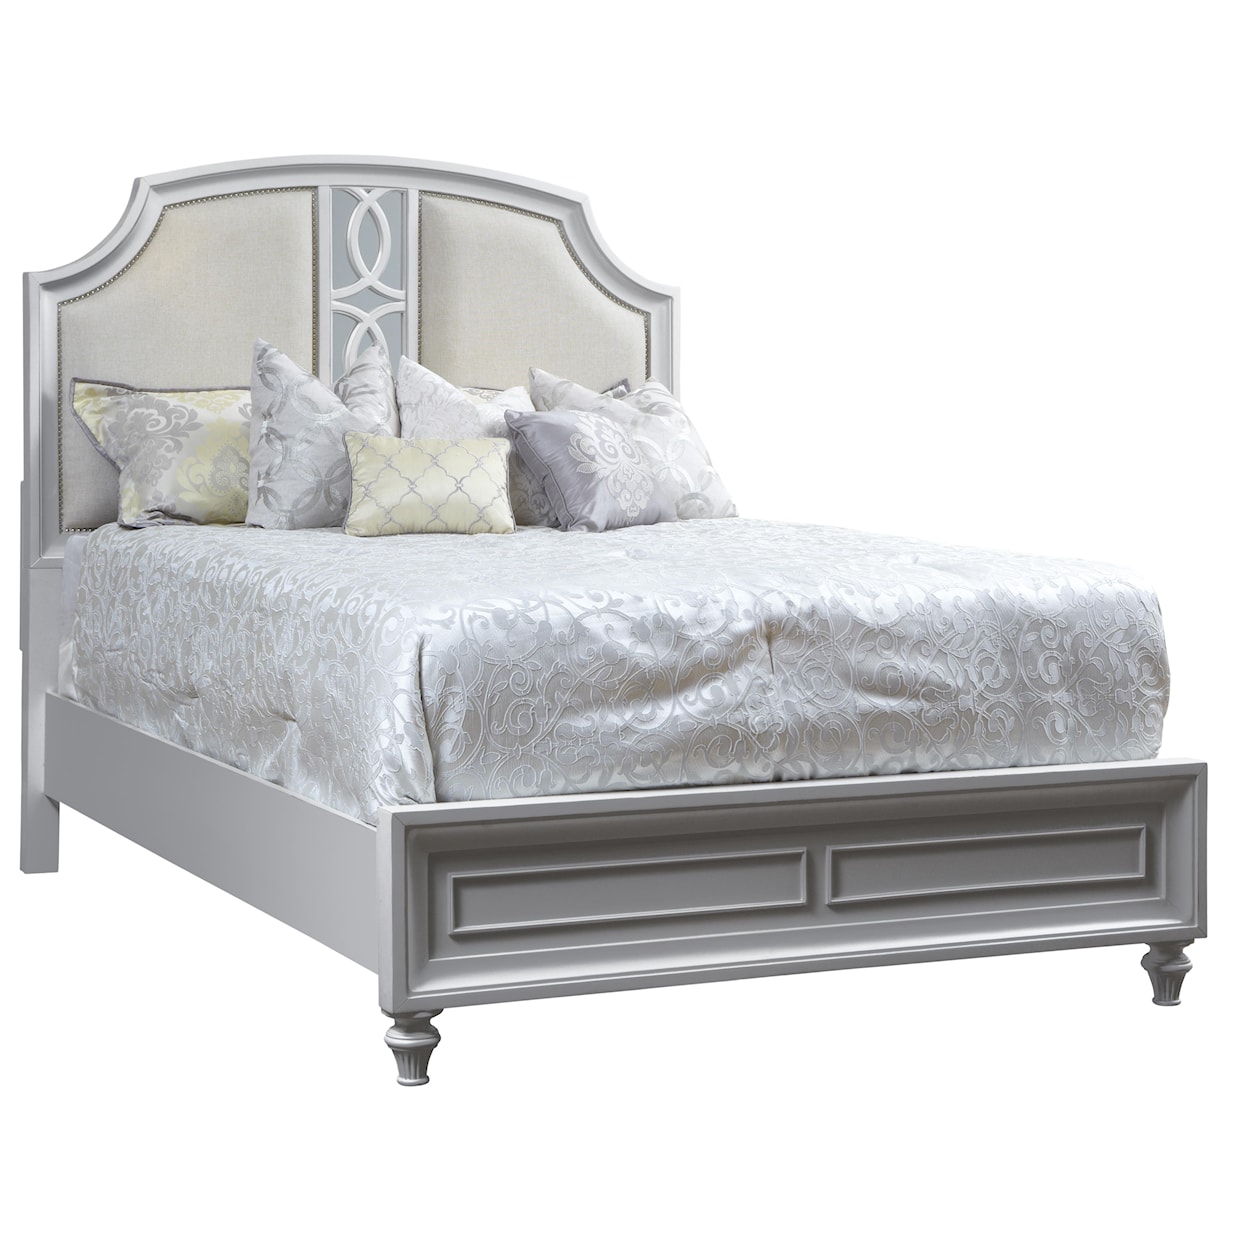 Avalon Furniture Regency Park King Panel Bed